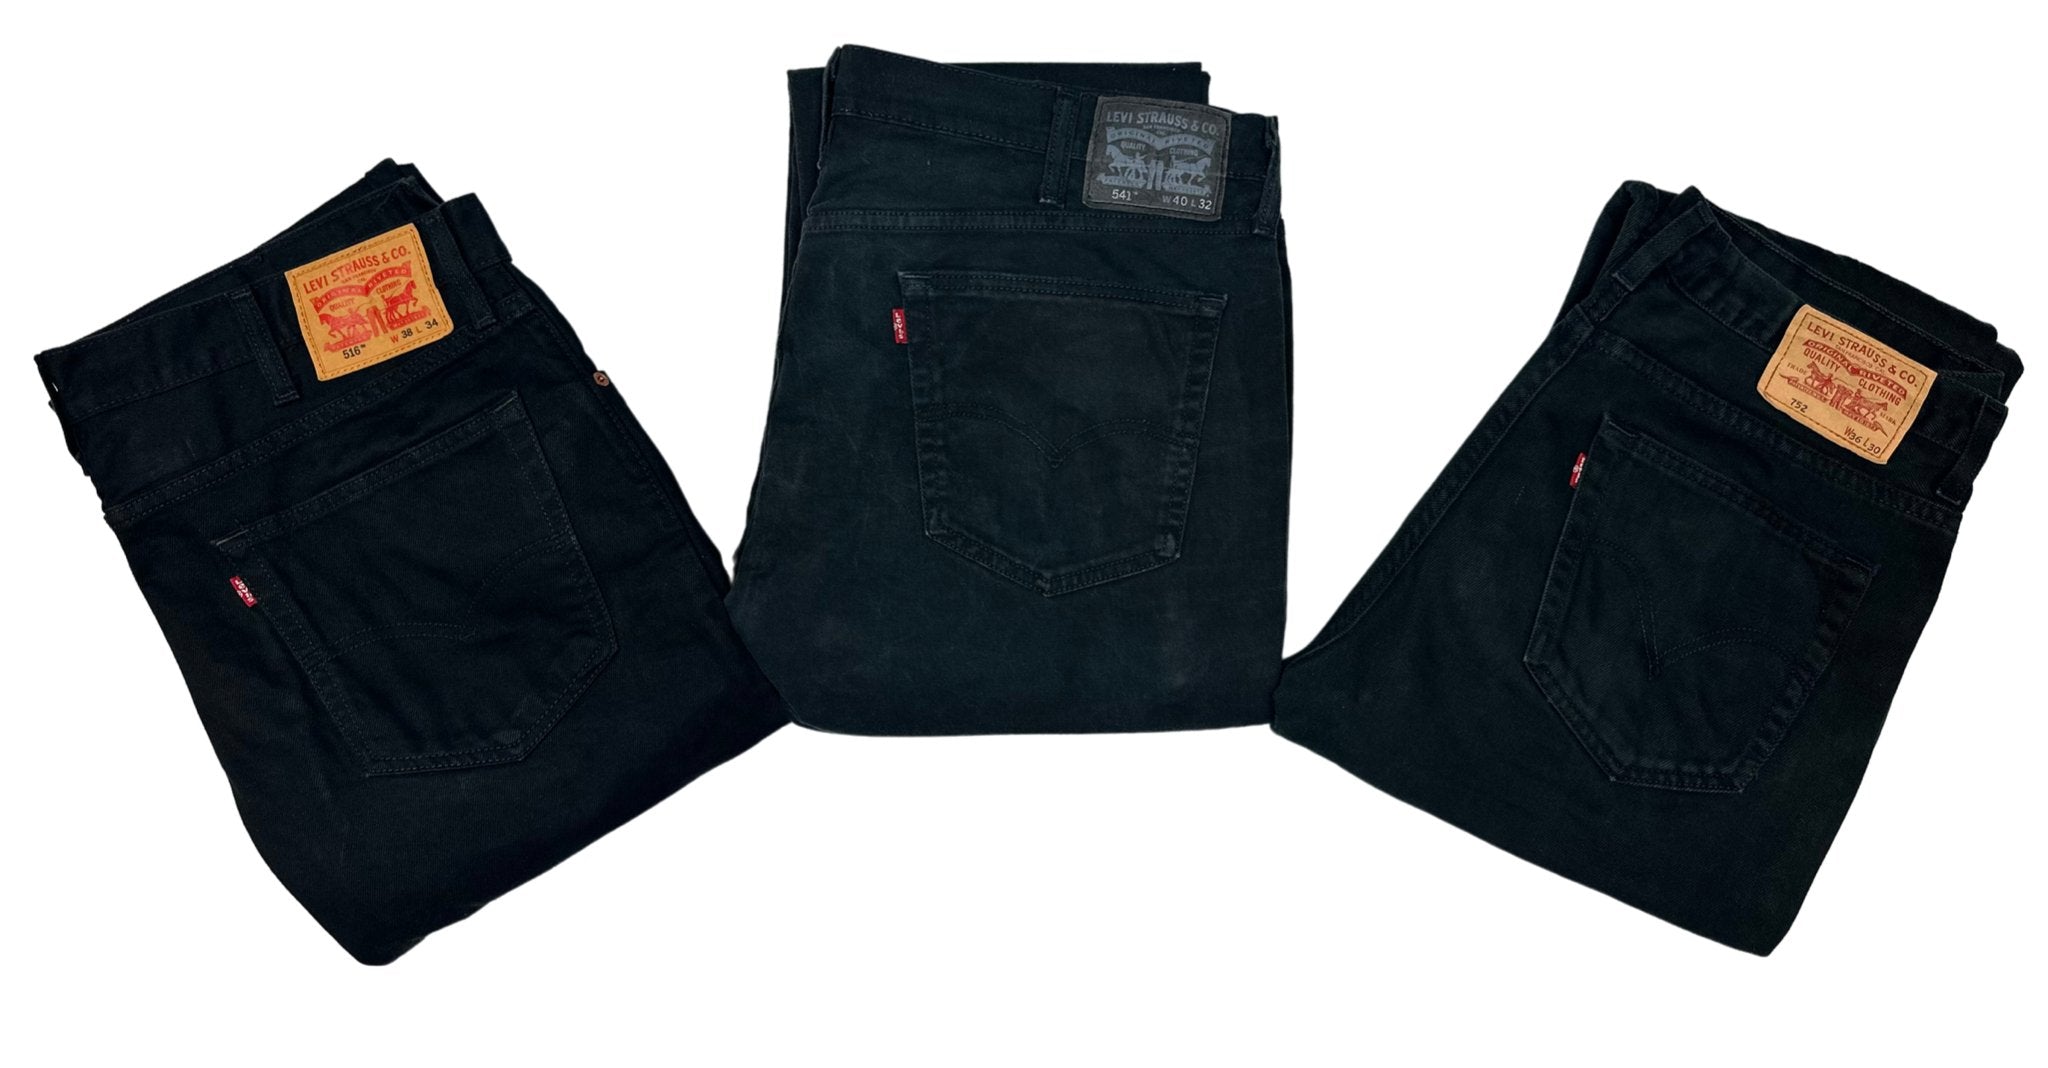 Vintage Levi's Black Jeans - Waist 33 - Length 30 - Vintage Superstore Online